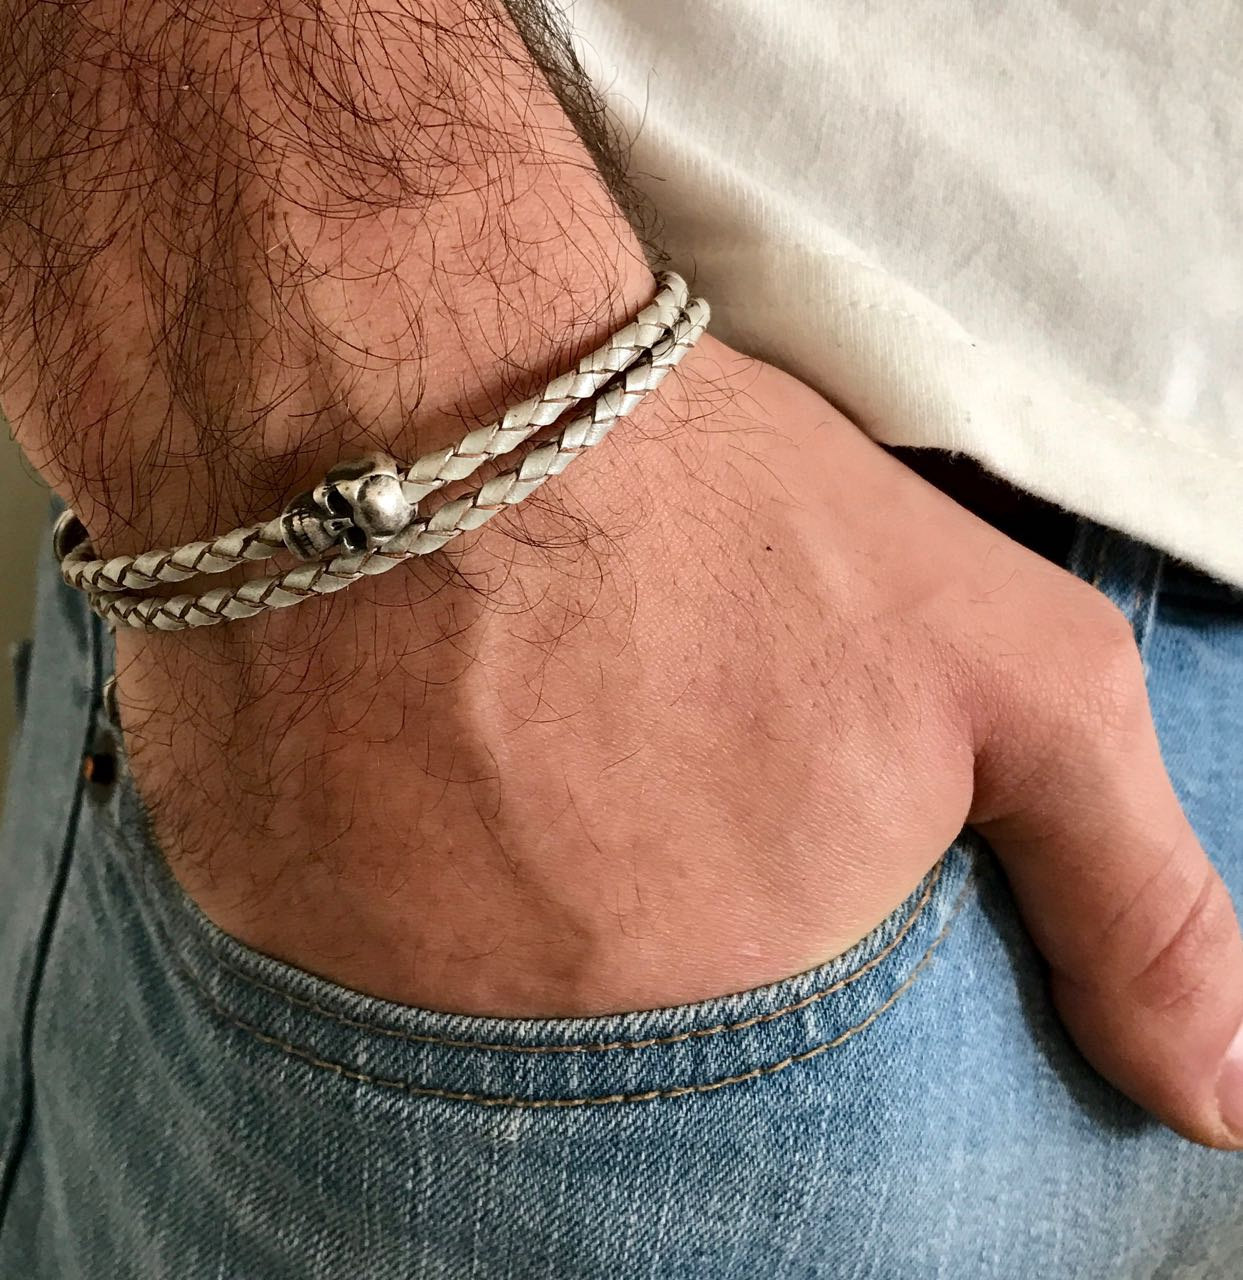 Men's Bracelet - Men's Skull Bracelet - Men's Leather Bracelet - Men's Jewelry - Men's Gift - Boyfrienf Gift - Husband Gift - Gift for him - Gift For Dad - Present For Men